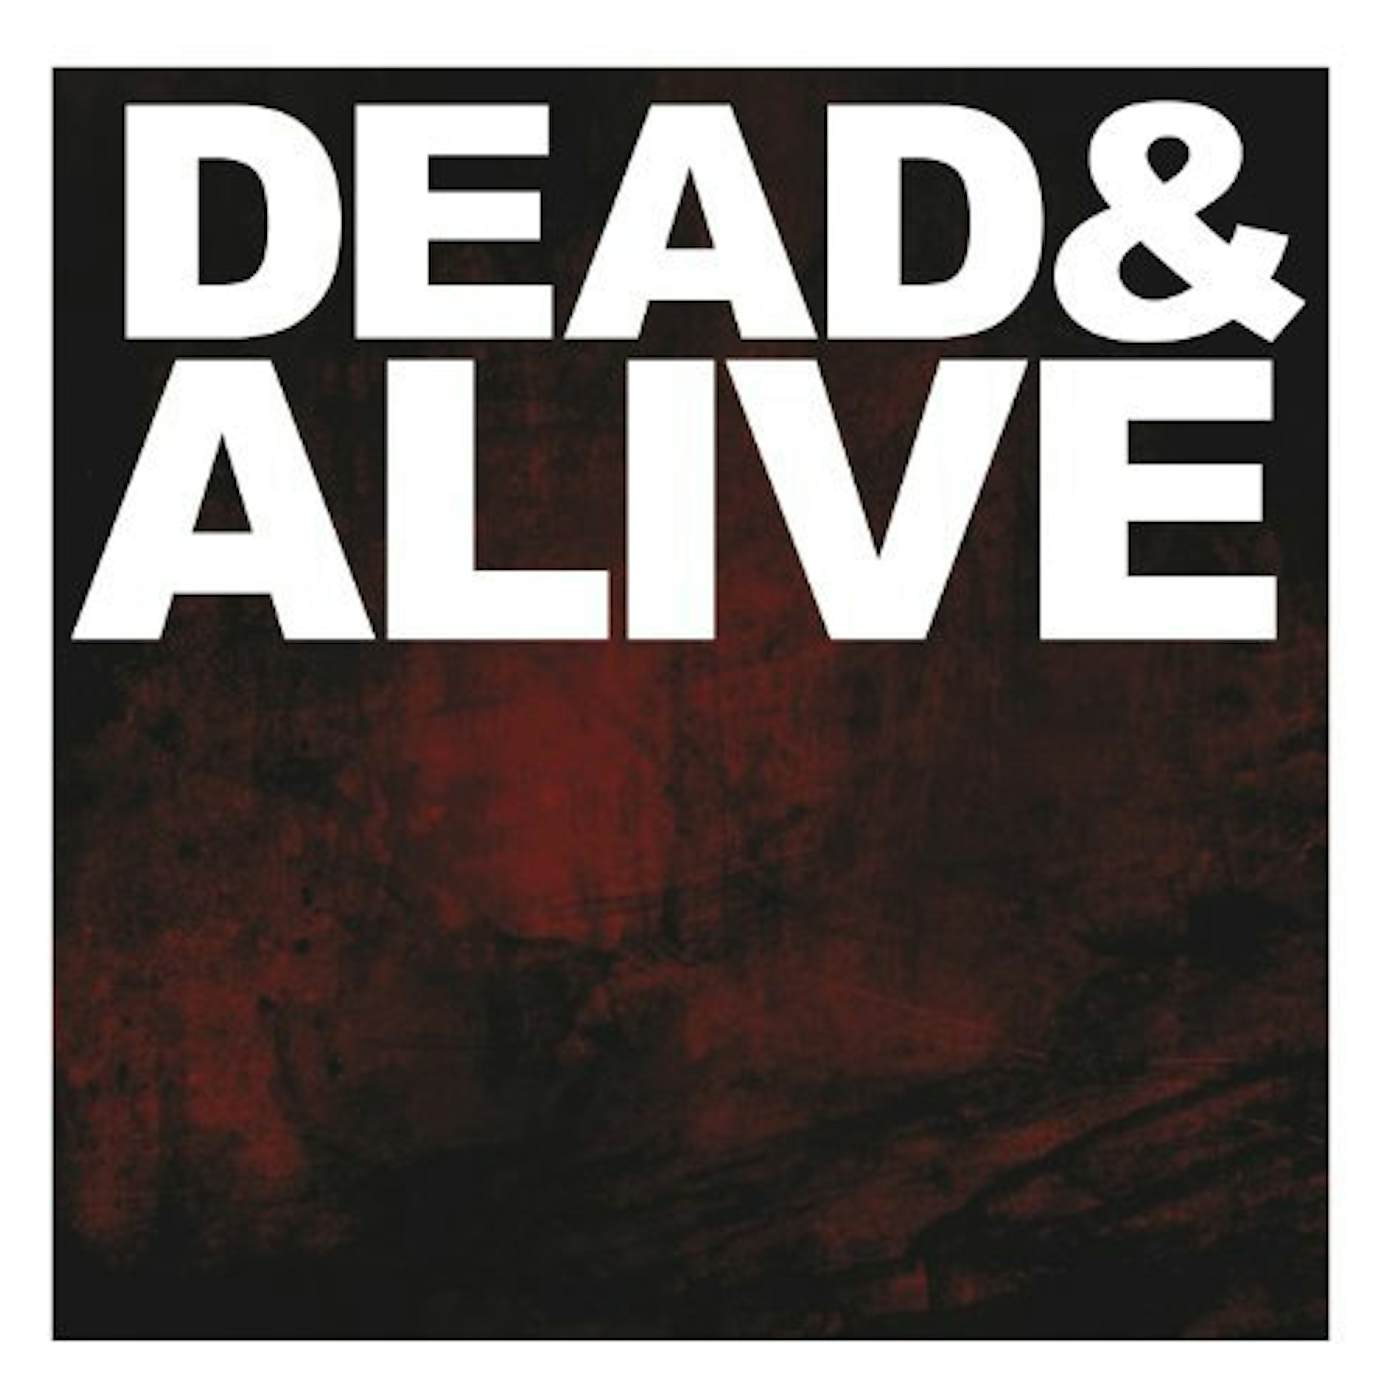 The Devil Wears Prada DEAD & ALIVE CD